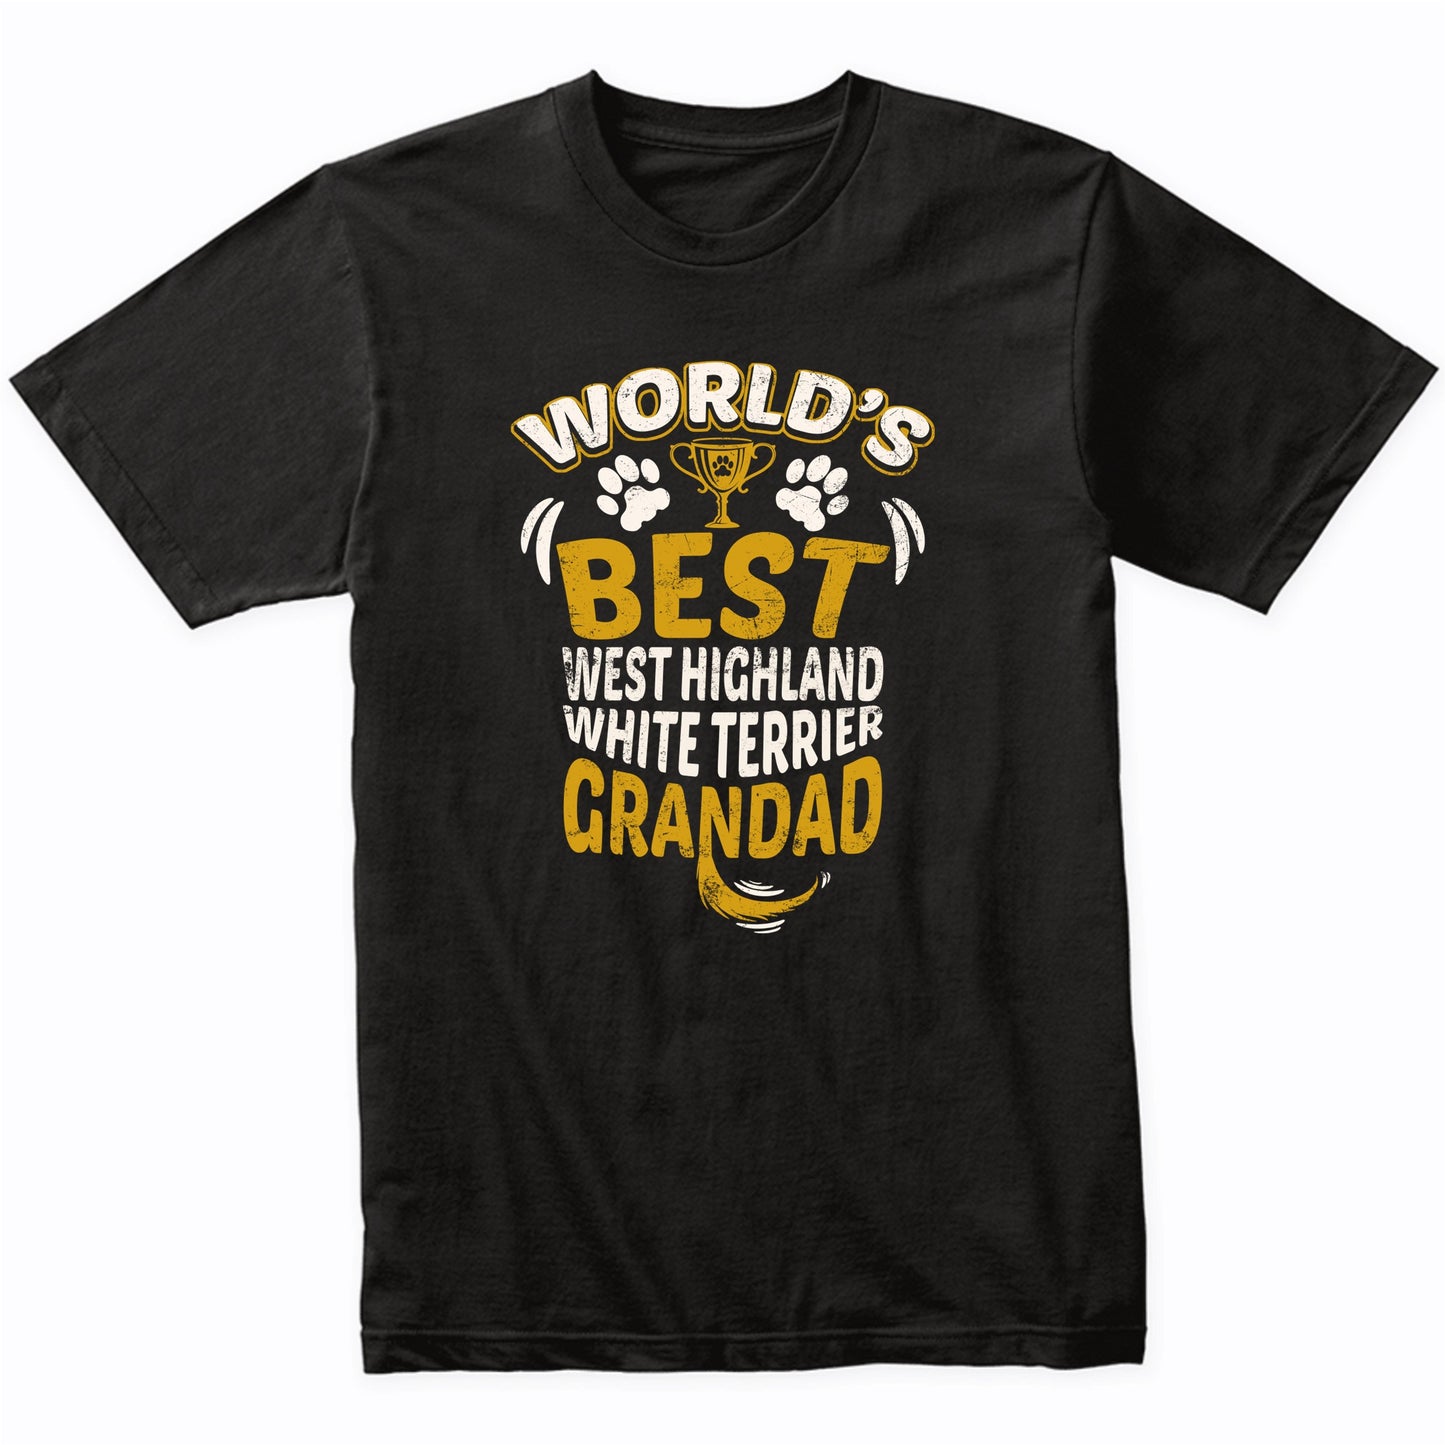 World's Best West Highland White Terrier Grandad T-Shirt